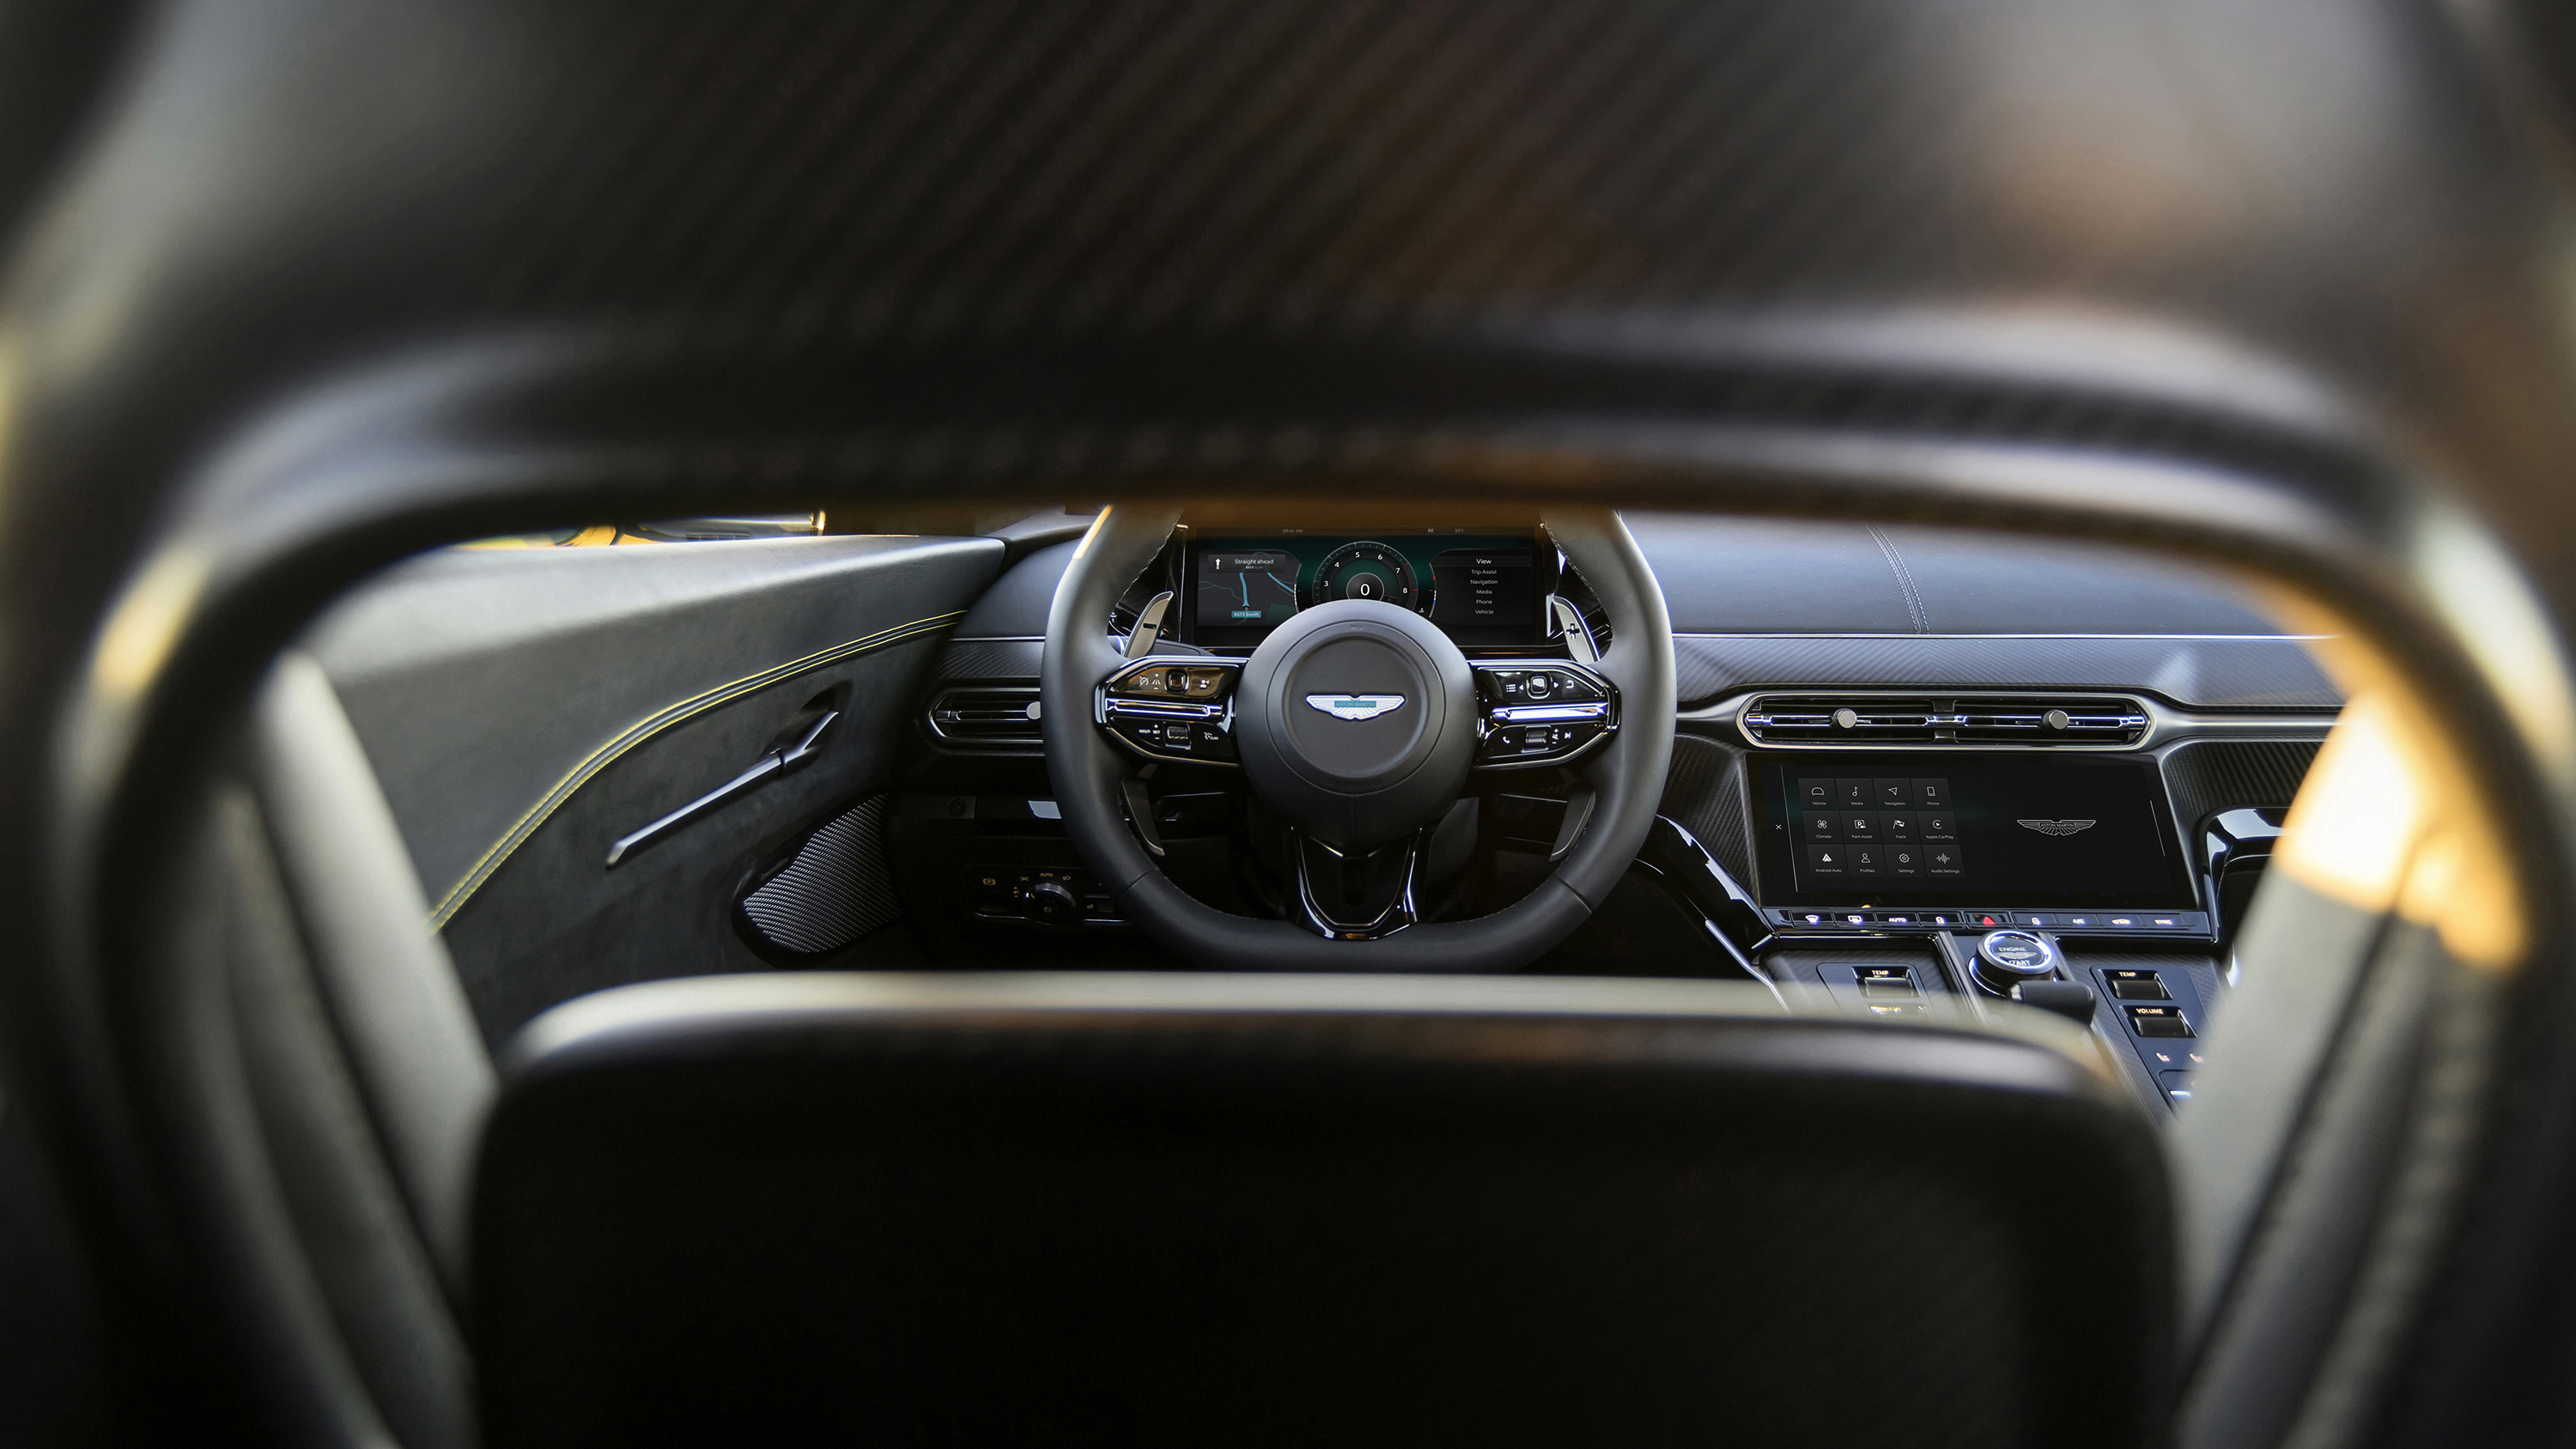 Stunning: the new Aston Martin Vantage